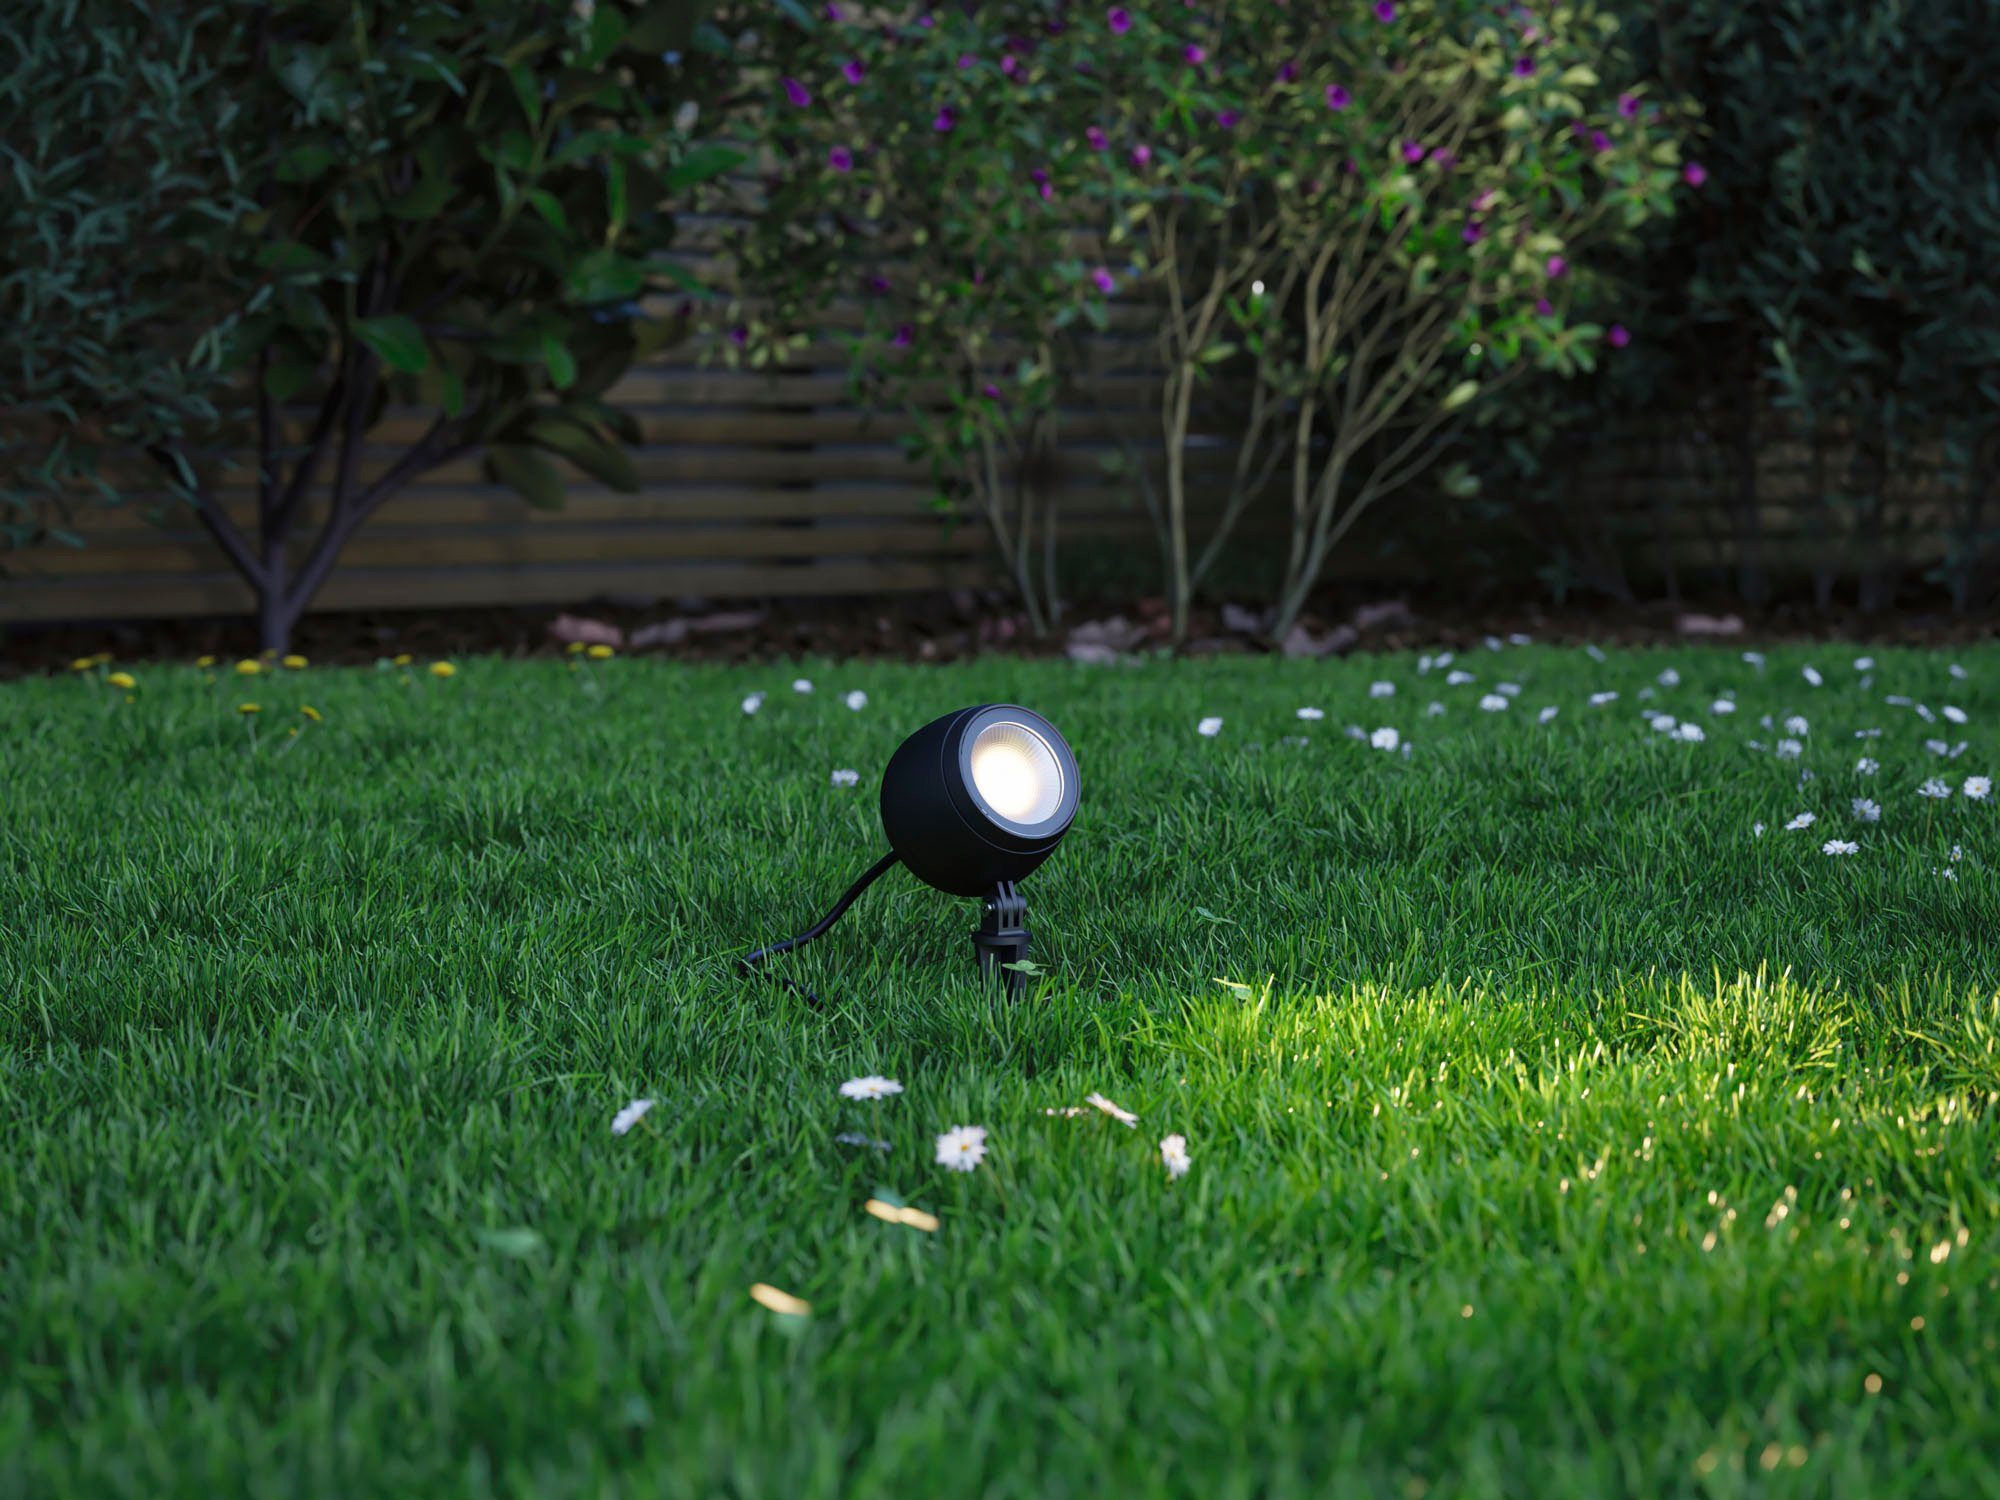 ZigBee, Insektenfreundlich Plug friendly fest Insect Kikolo Paulmann Gartenleuchte Spot Warmweiß, LED & Shine LED Outdoor integriert,